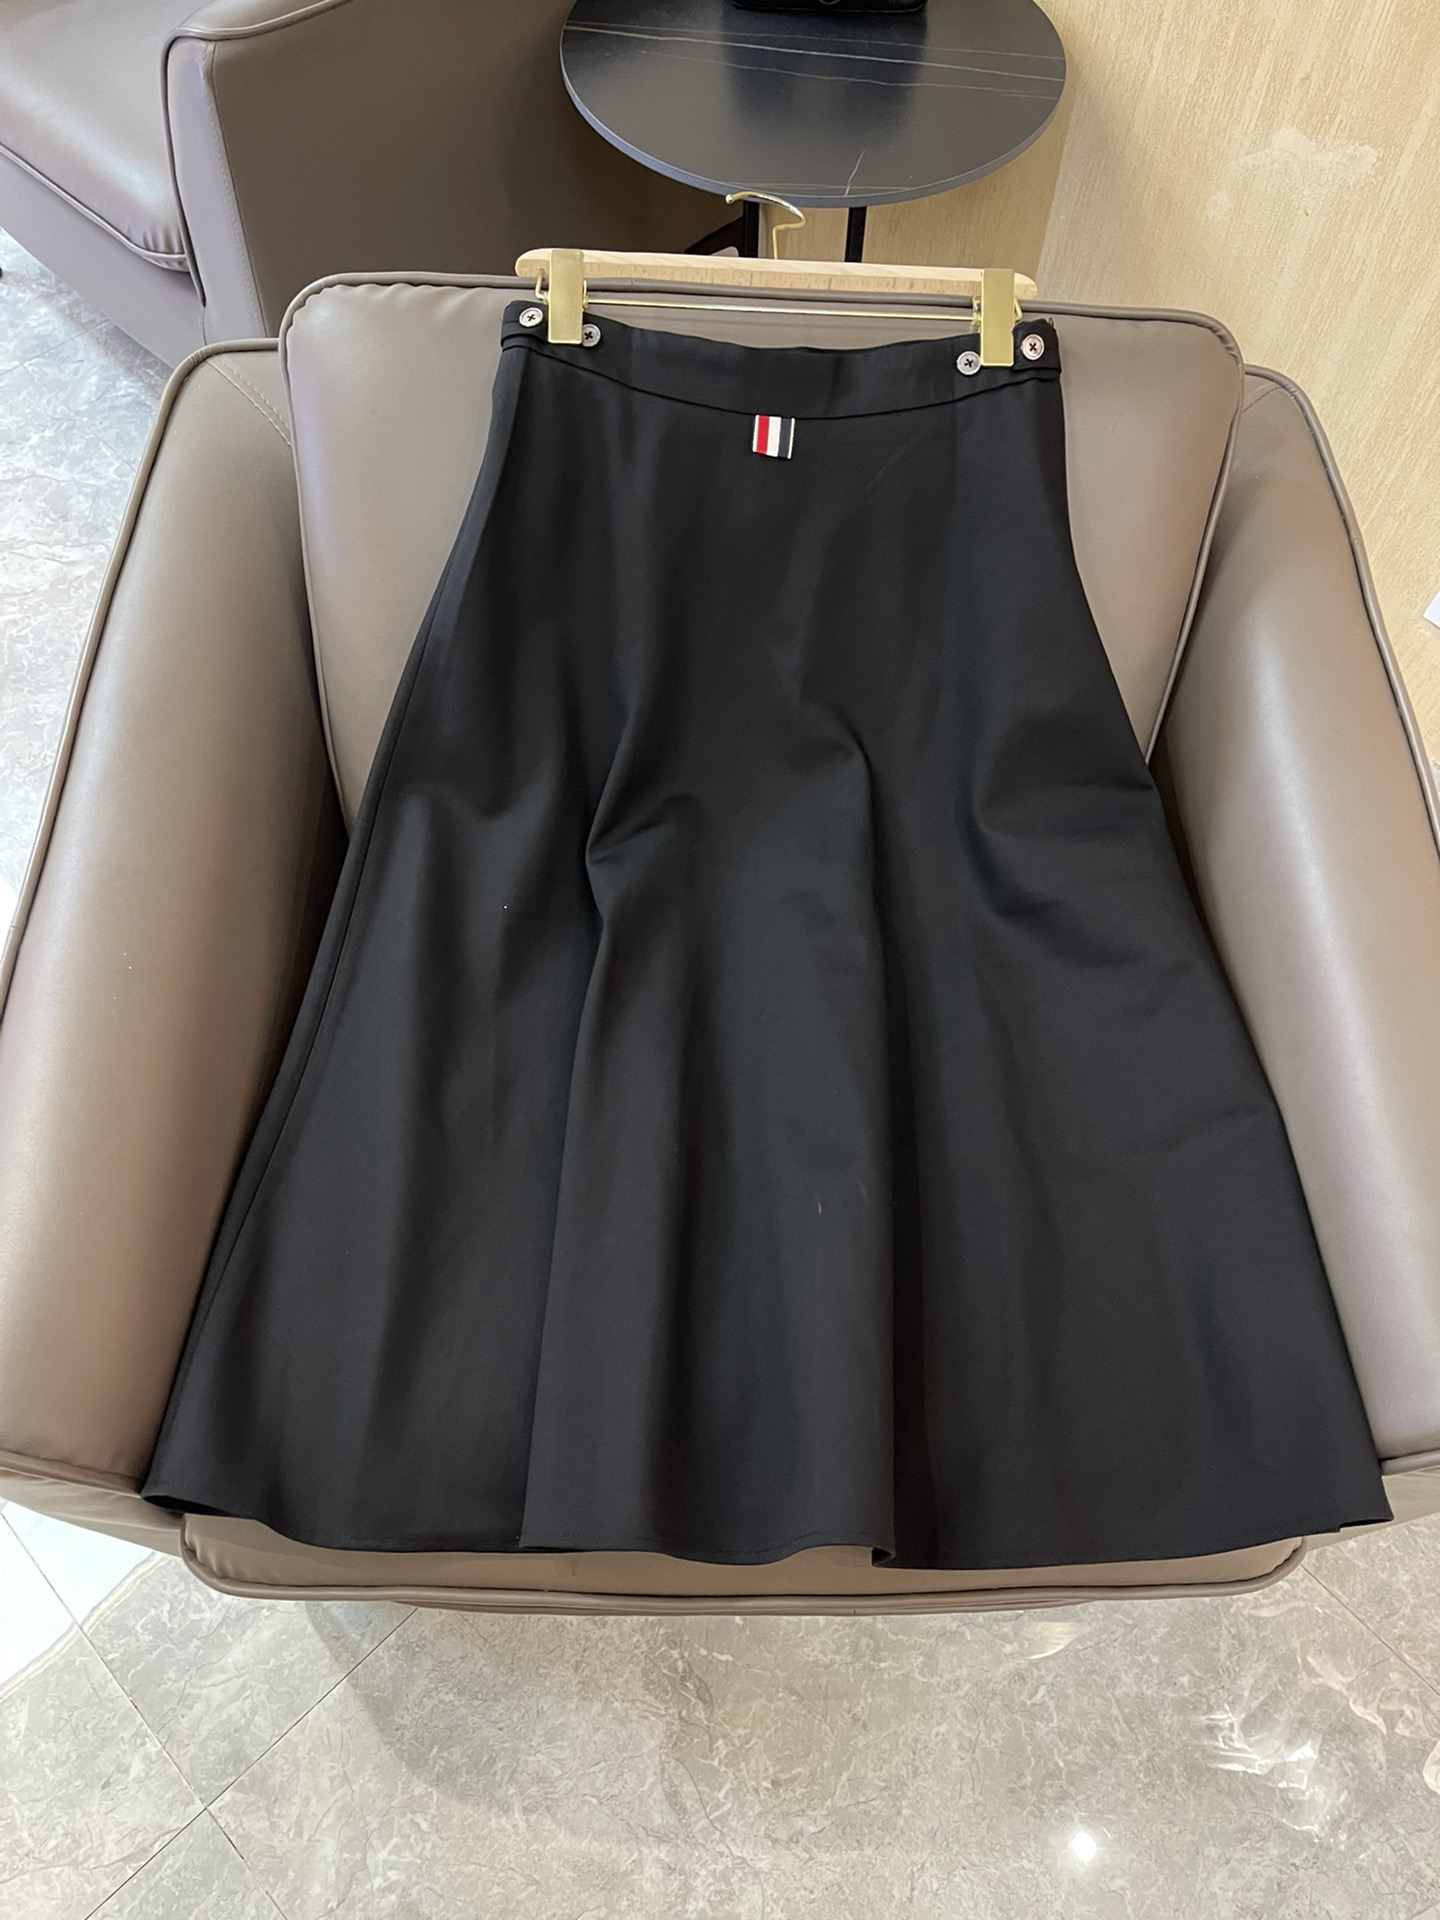 KZ008#新款半裙⚠️Pzedqe????\nTB 最新款 西装料 长半裙 灰色 黑色 36-38-40-42